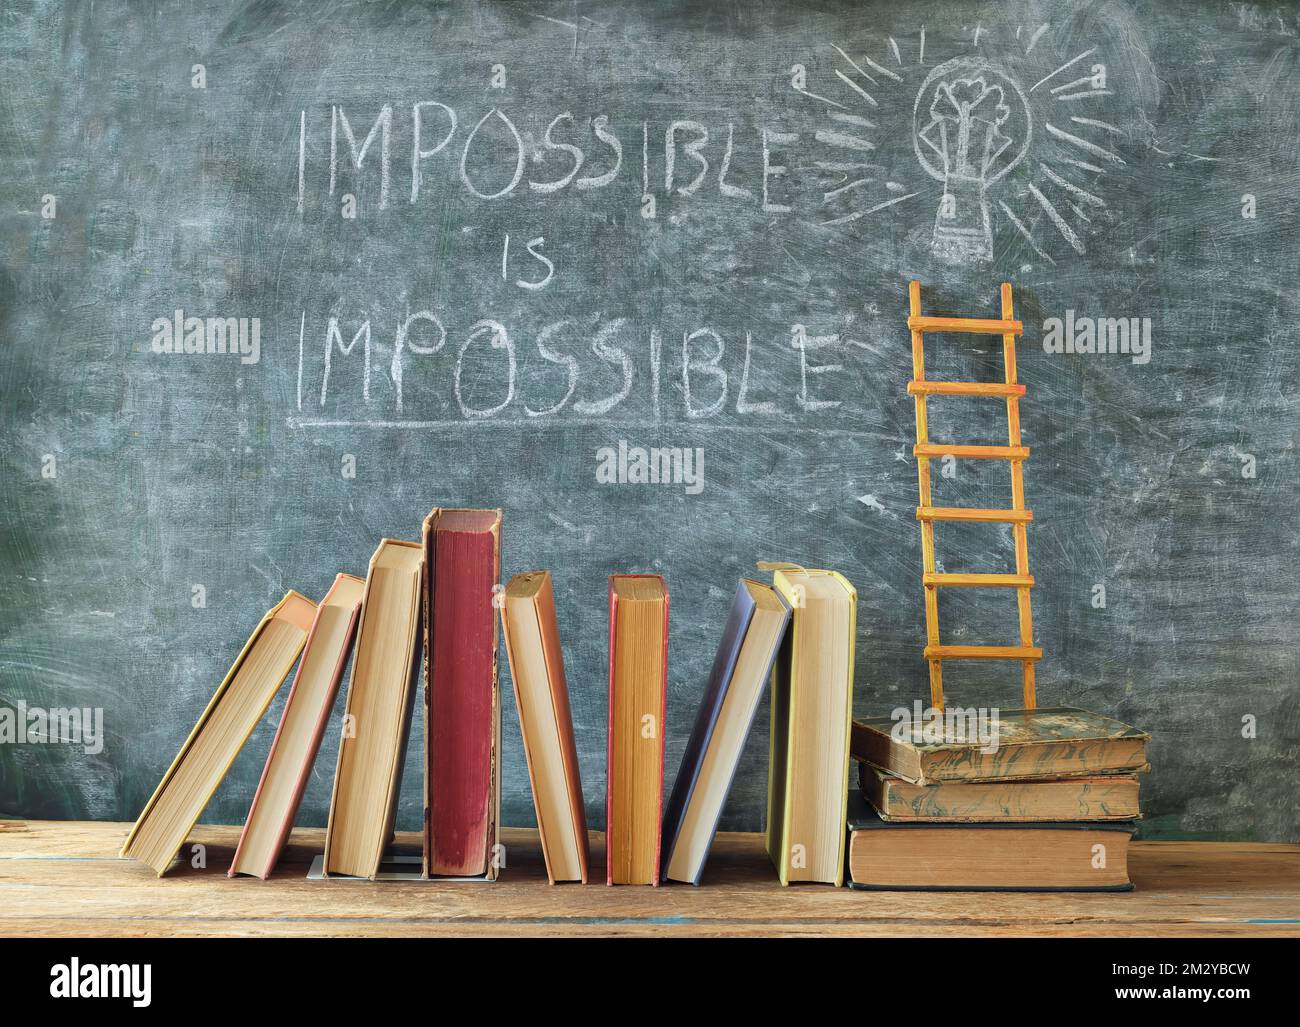 Pile de livres de hardback avec le slogan impossible est impossible sur le tableau noir.apprentissage,éducation,développement, échelle de la réussite et de retour à l'école concept Banque D'Images